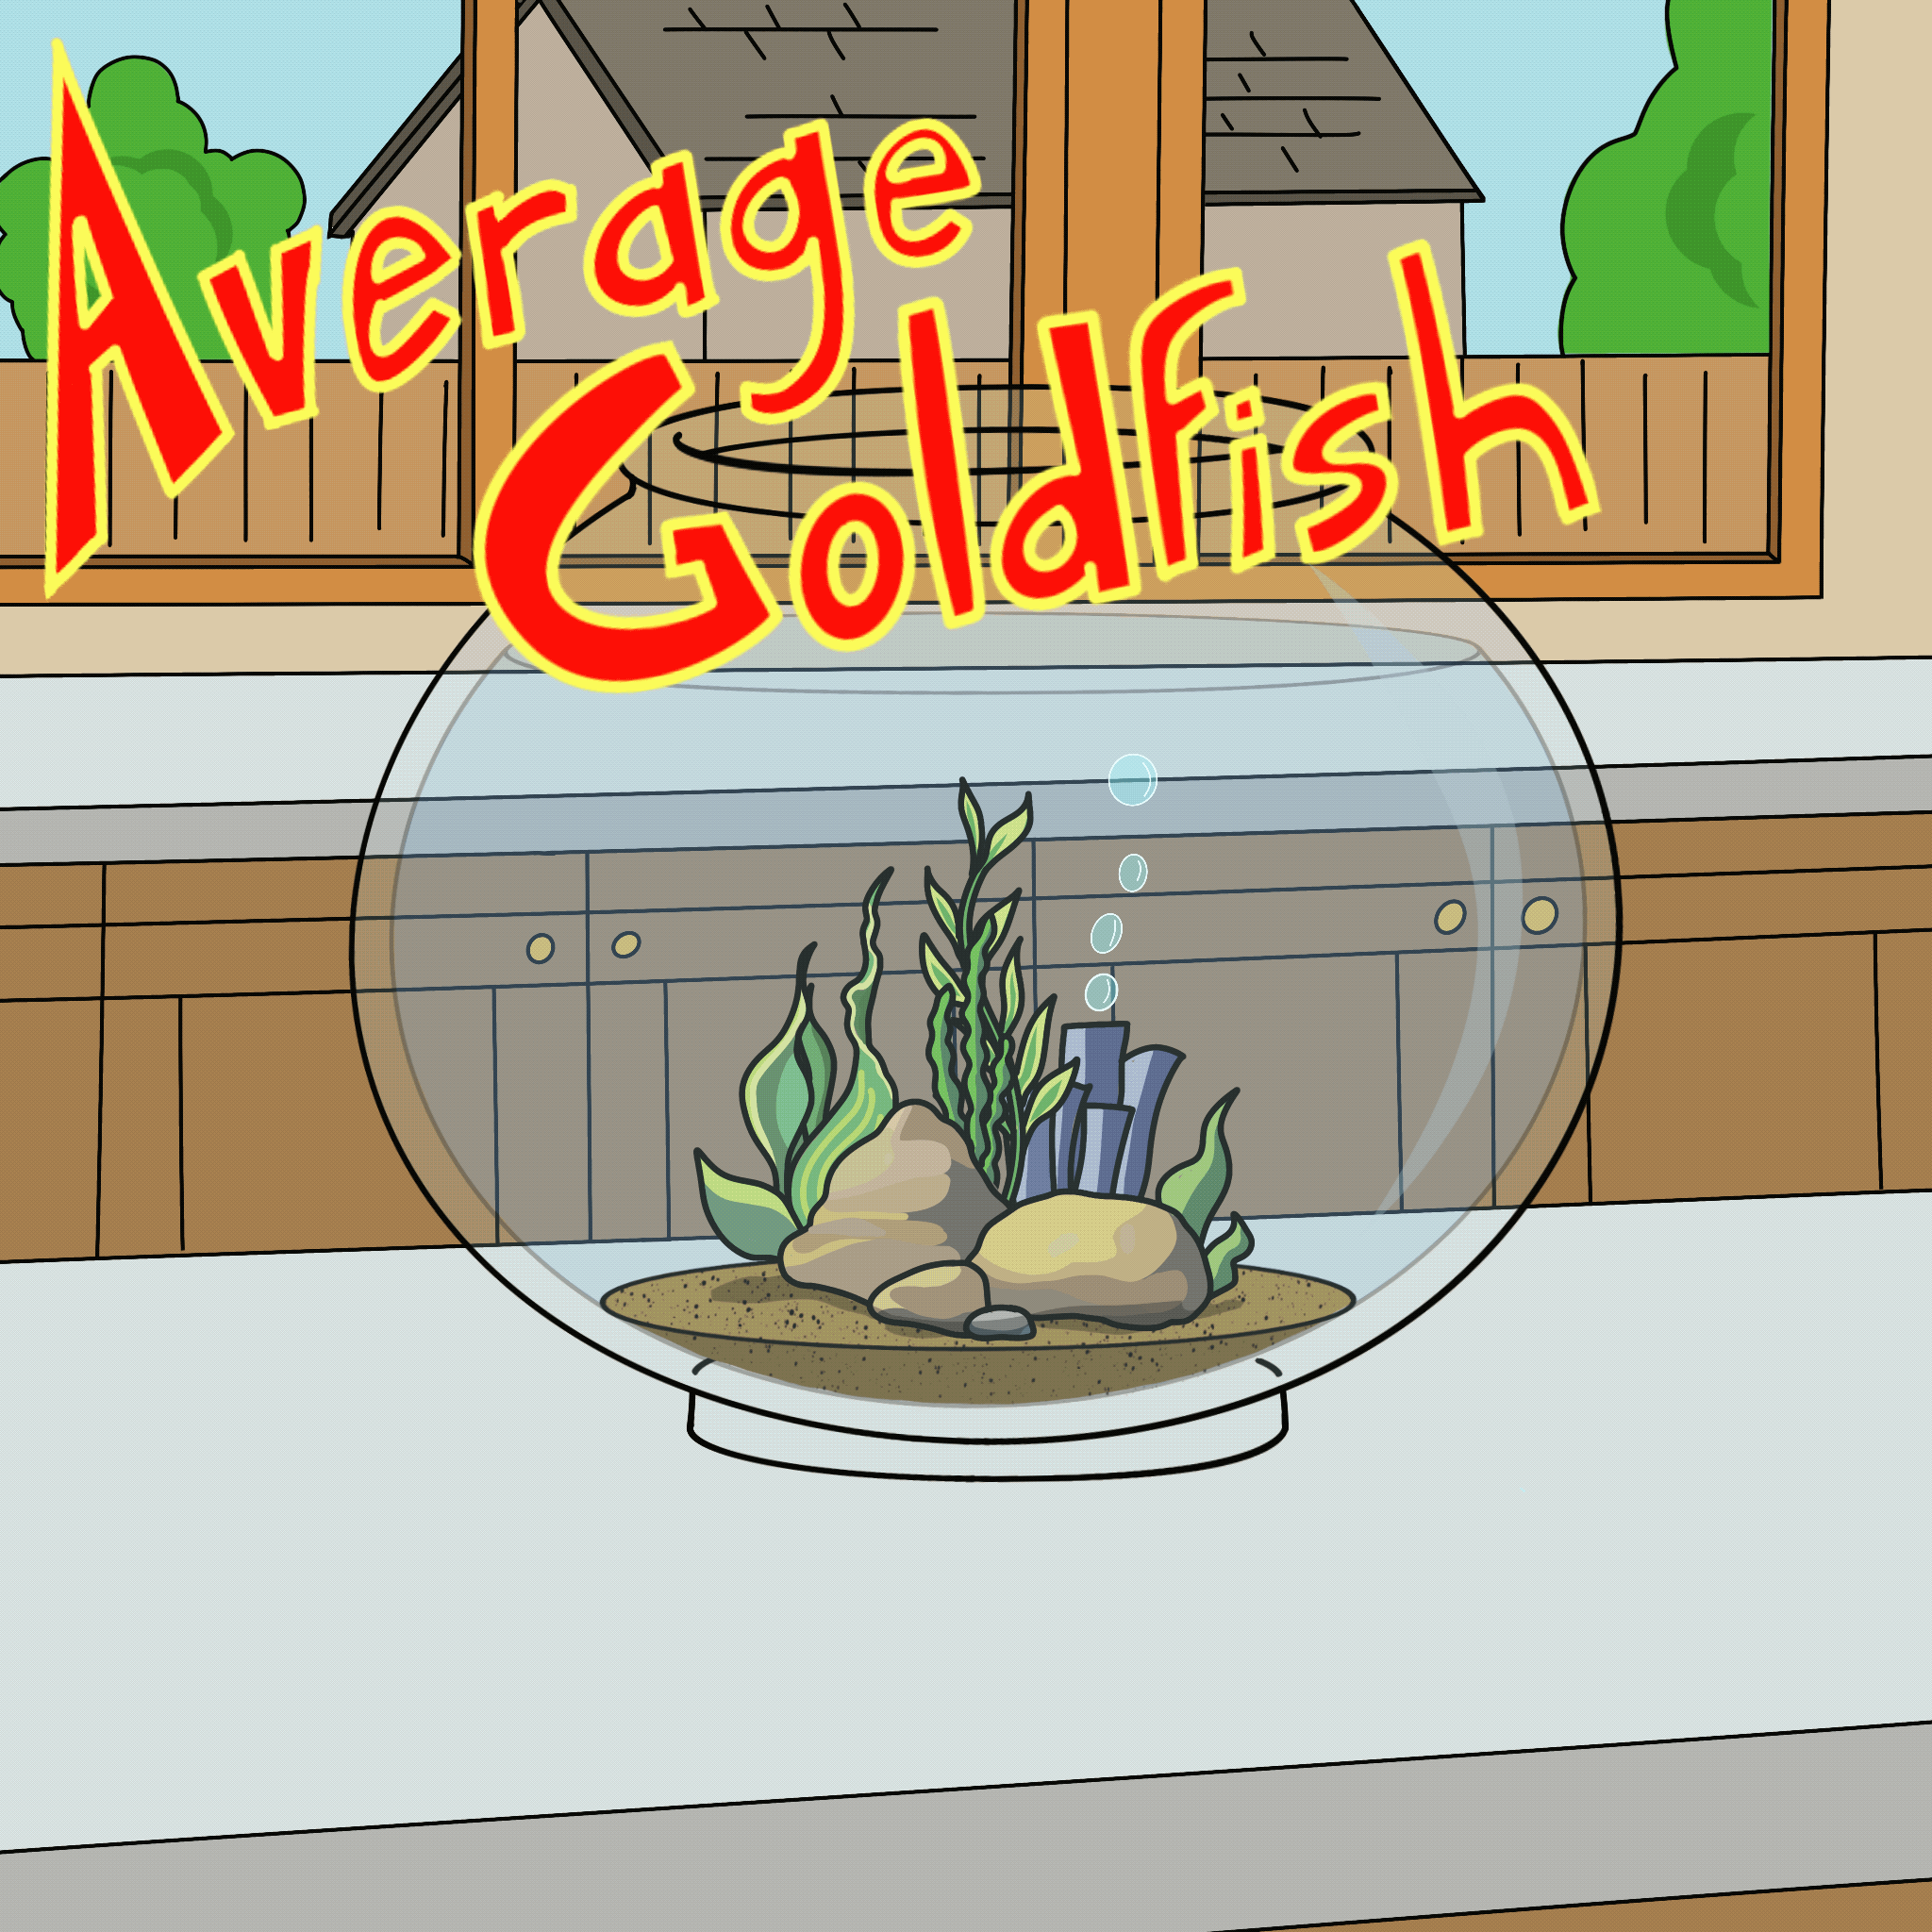 Average Goldfish